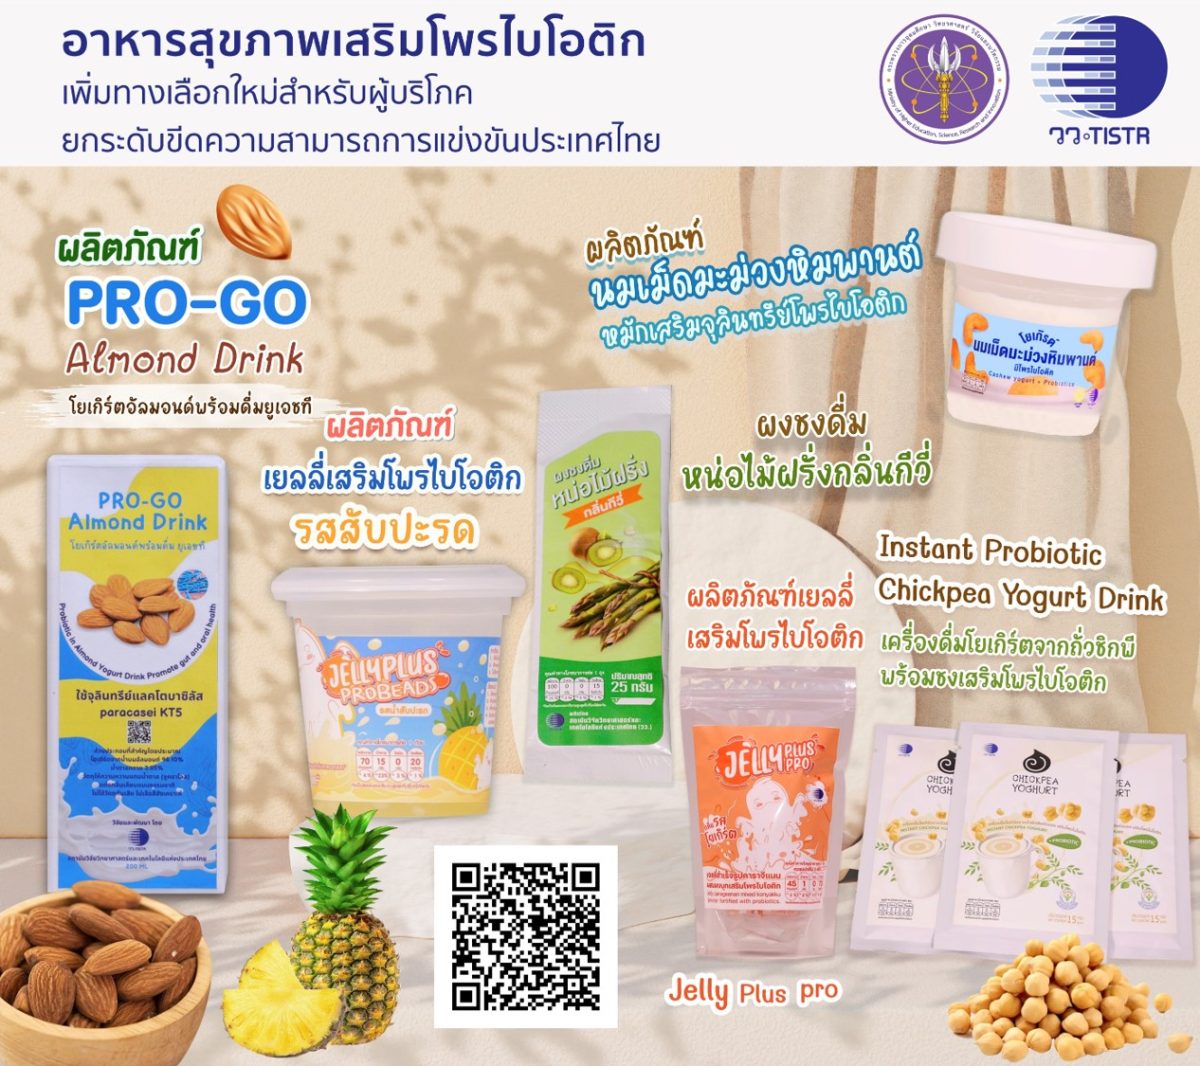 ศุภมาส สั่งการ วว. เสริมแกร่งผู้ประกอบการไทย ถ่ายทอดเทคโนโลยีการผลิต อาหารสุขภาพเสริมโพรไบโอติก สู่เชิงพาณิชย์ เพิ่มทางเลือกใหม่สำหรับผู้บริโภค ยกระดับขีดความสามารถการแข่งขันประเทศไทย